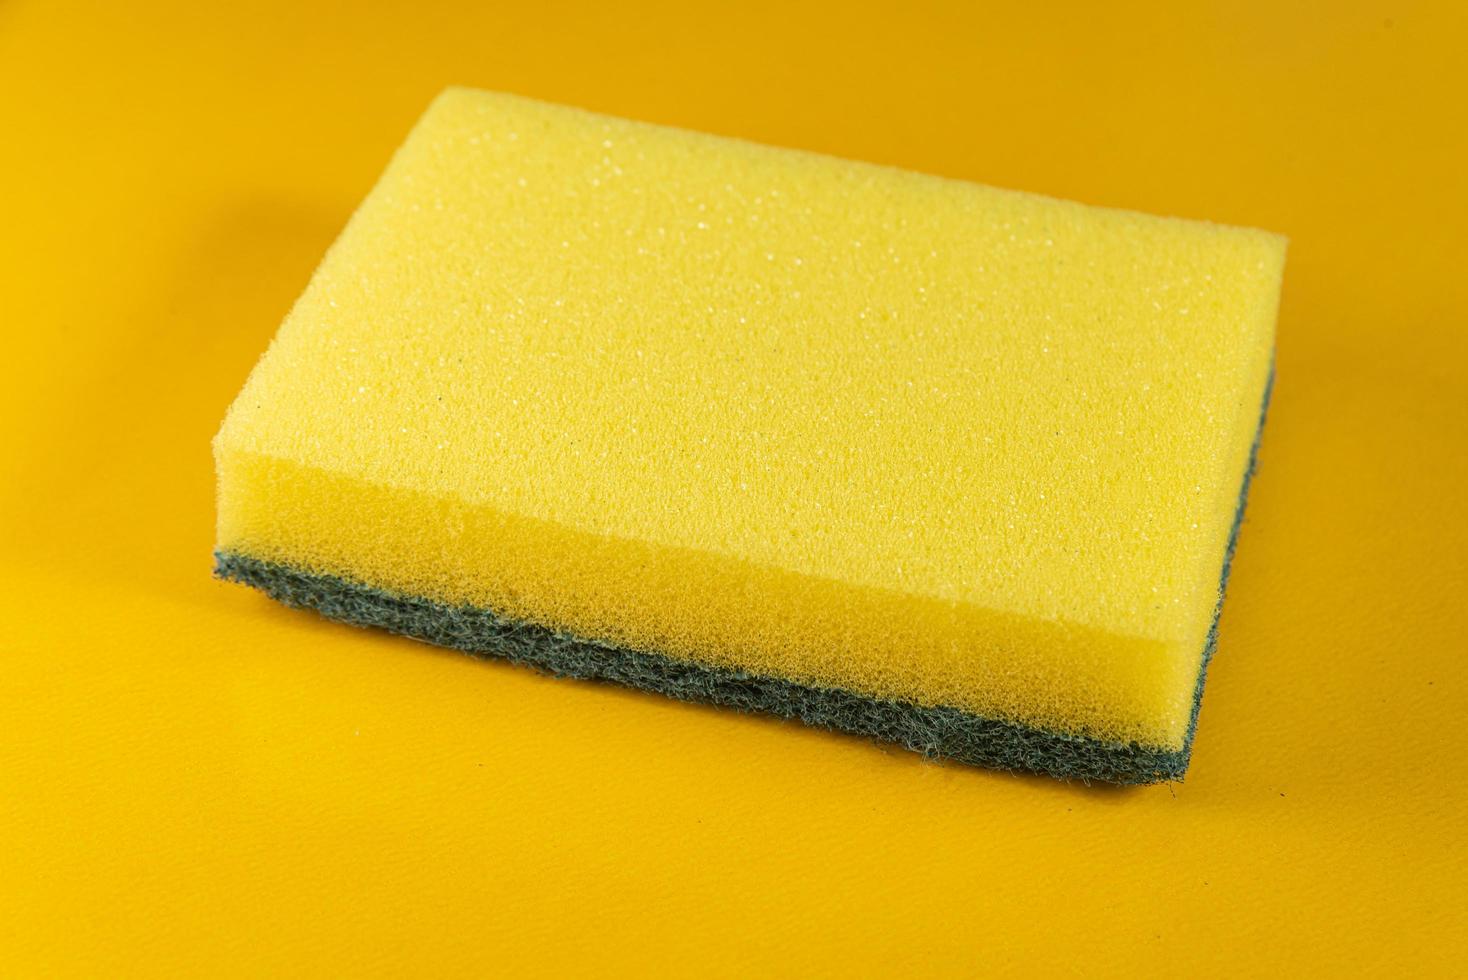 Küchenschwamm auf dem gelben Hintergrund foto